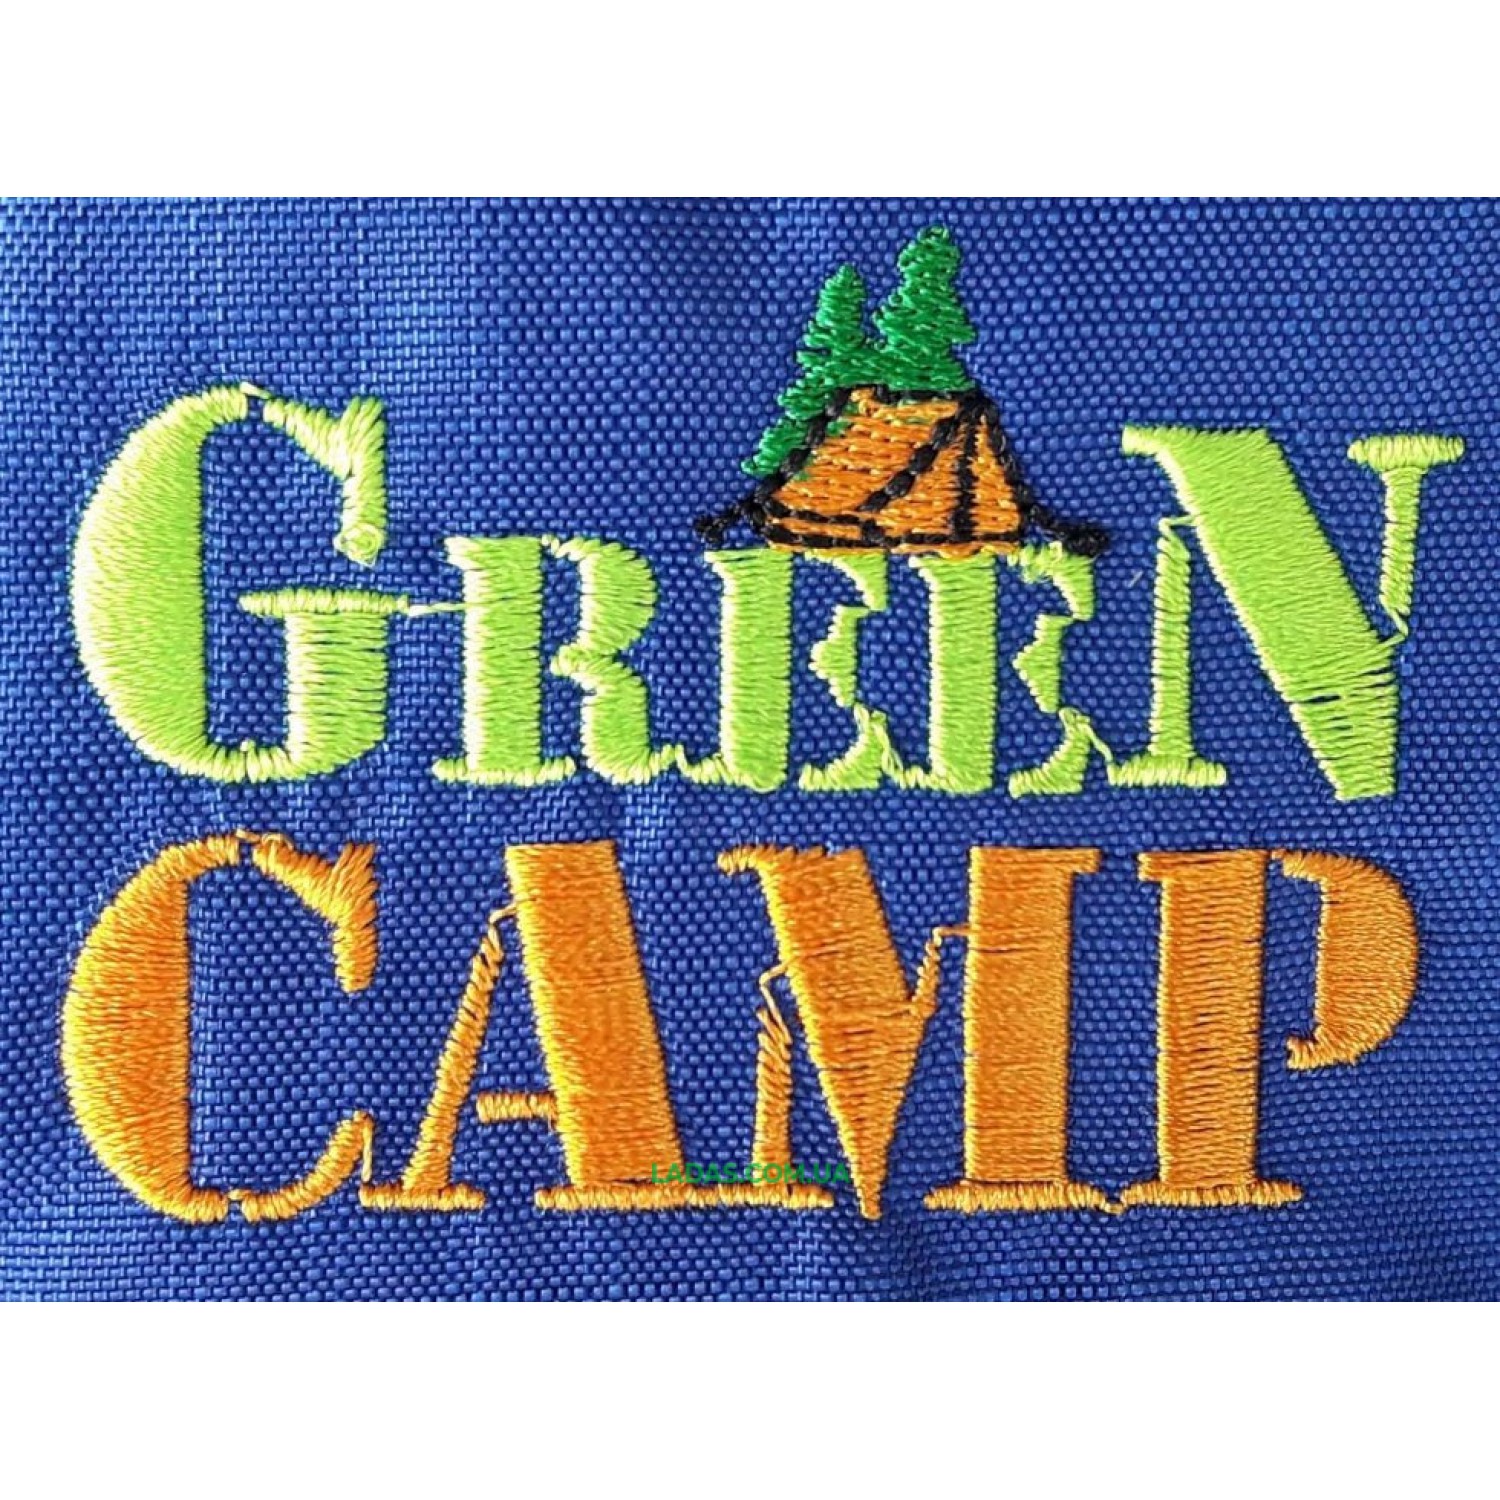 Палатка двухместная Green Camp GC-1001A